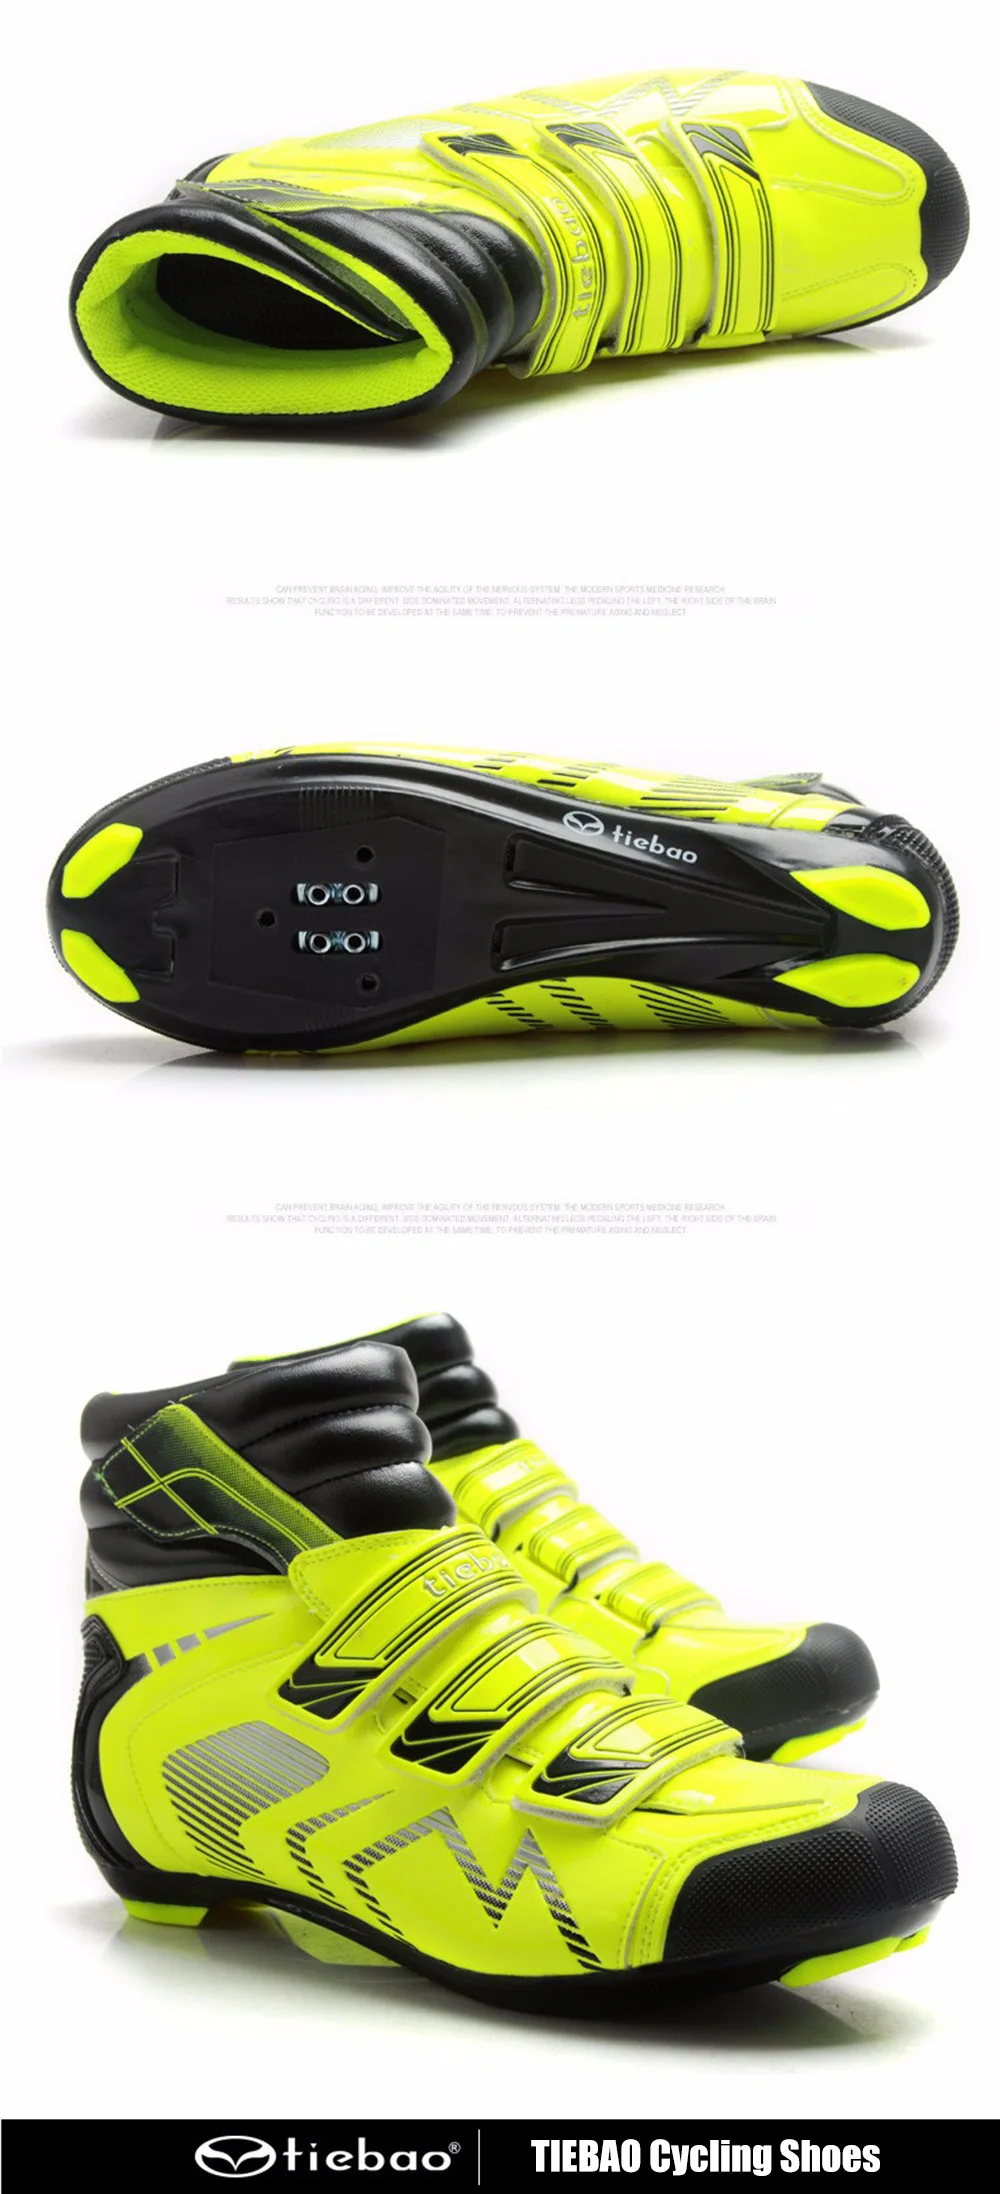 Tiebao велосипедная обувь для шоссейных зимних гонок, велосипедная обувь, спортивная обувь для велоспорта, zapatillas deportivas mujer, мужские кроссовки